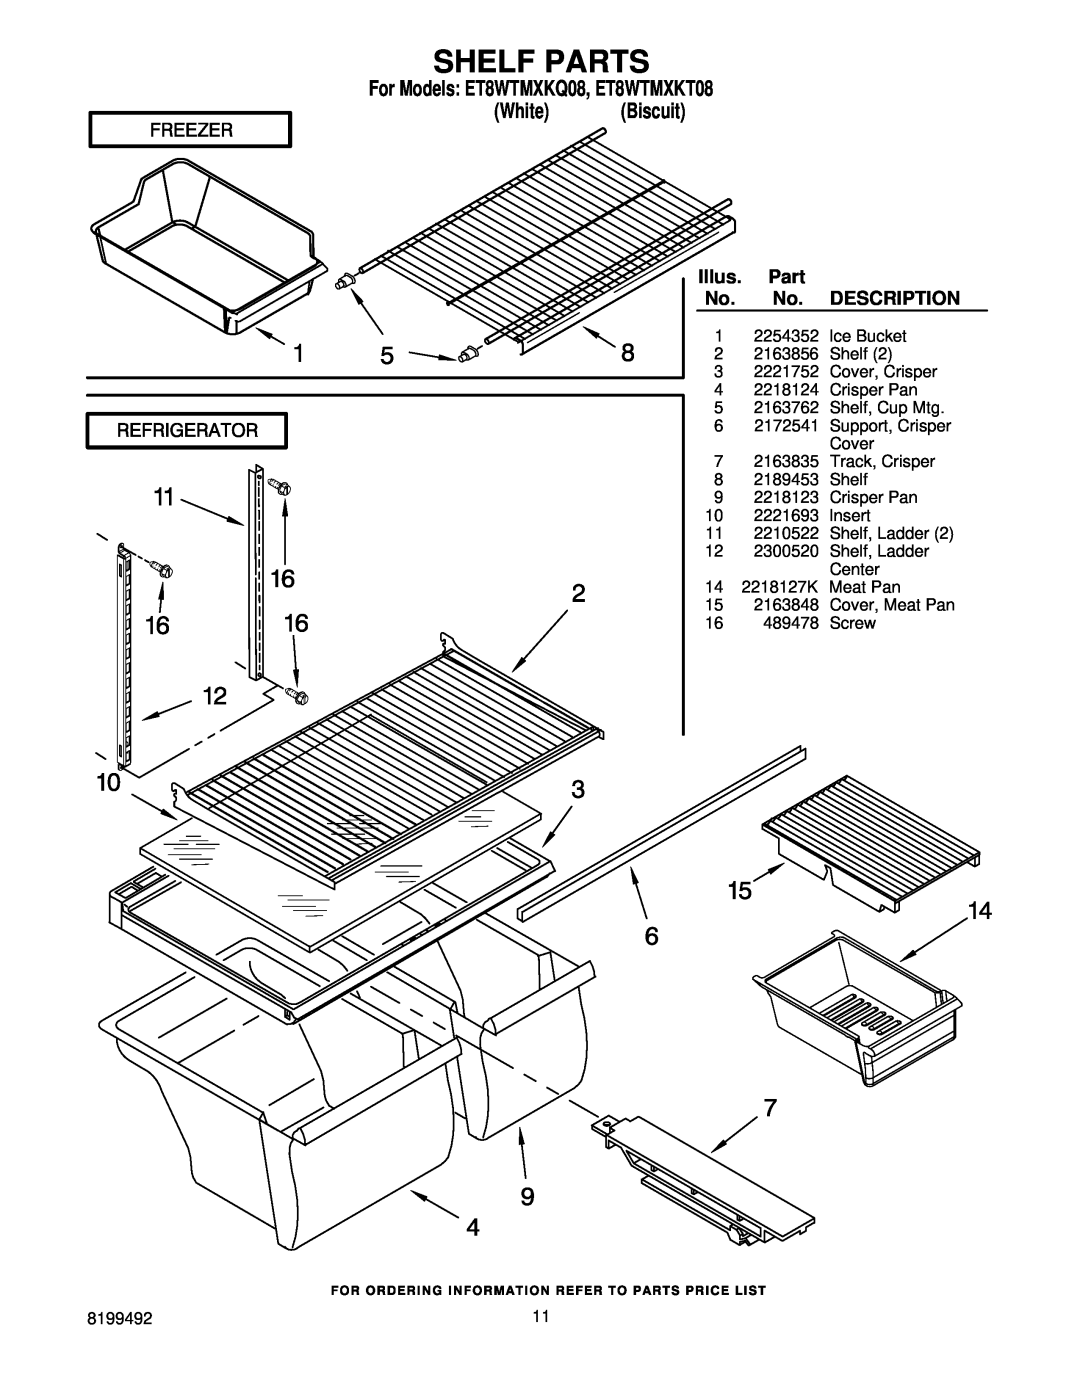 Whirlpool manual Shelf Parts, Description, For Models ET8WTMXKQ08, ET8WTMXKT08, White Biscuit, Illus 